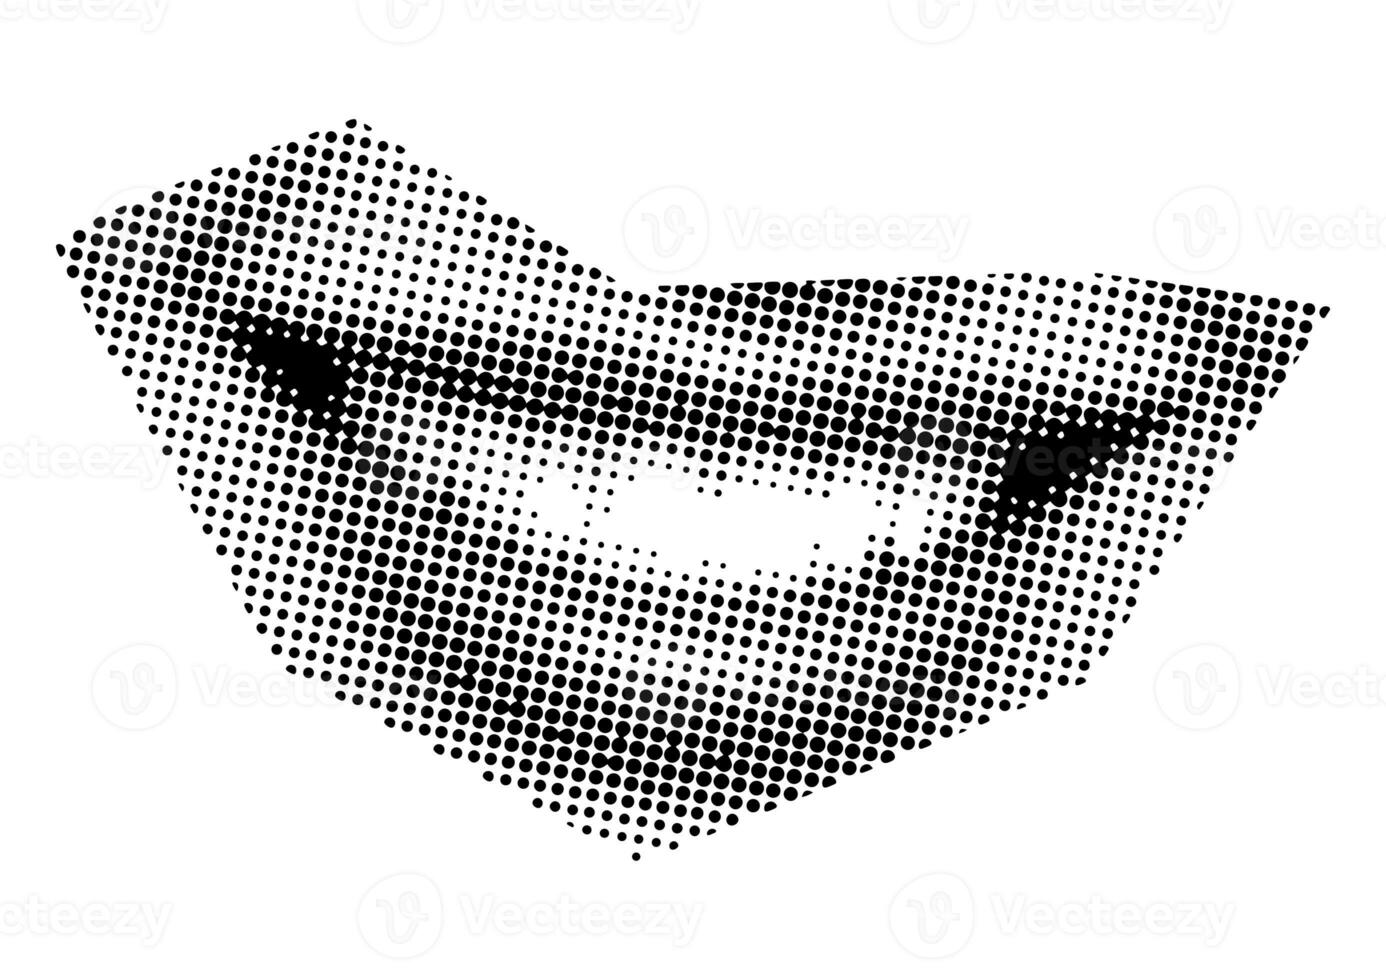 boca e lábios, sorriso, língua, pontos punk ano 2000 Preto e branco colagem elementos foto